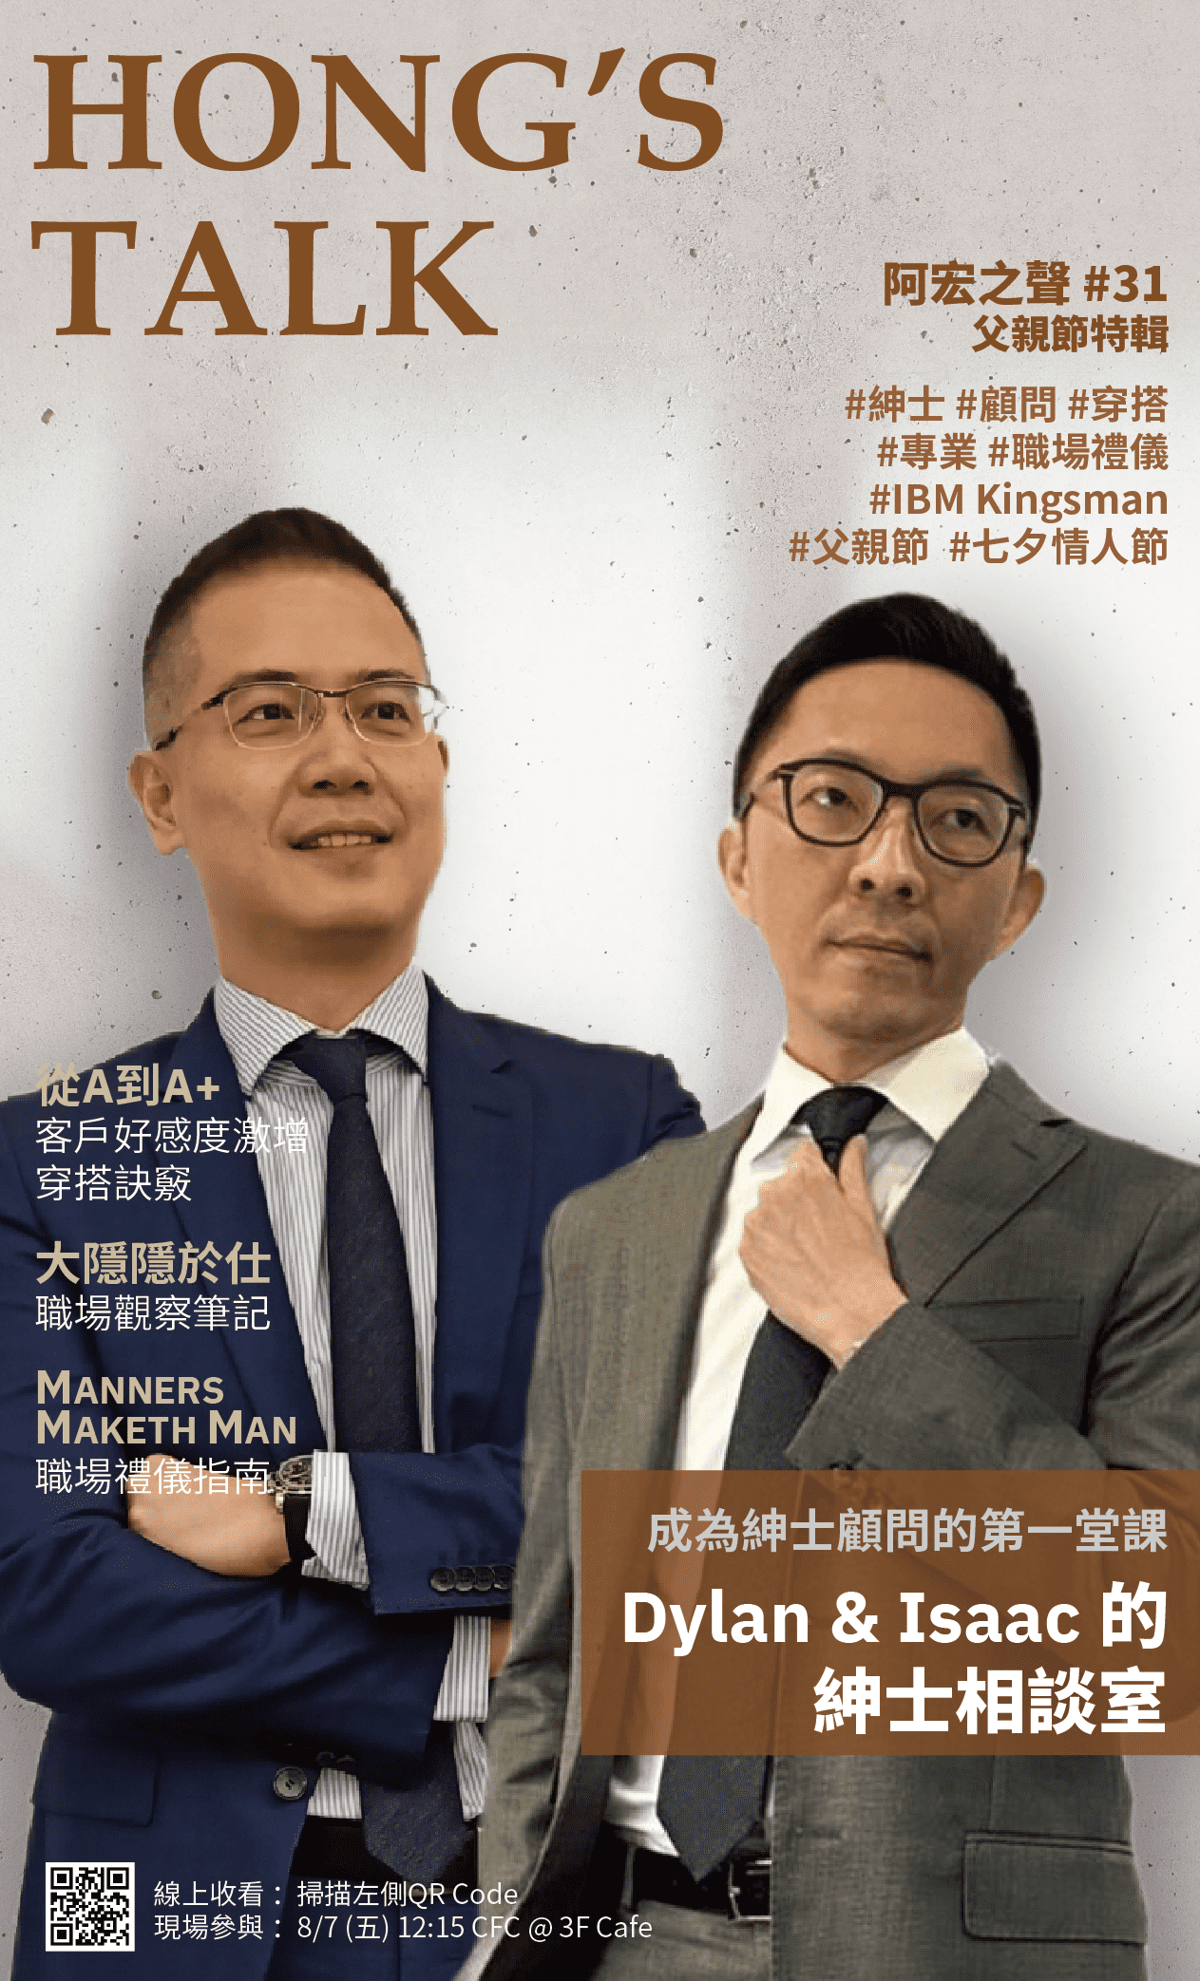 今年的父親節特輯，Hong 的「阿宏之聲」直播頻道邀請兩位 IBM 型男主管，告訴大家如何維持專業、穿的得體